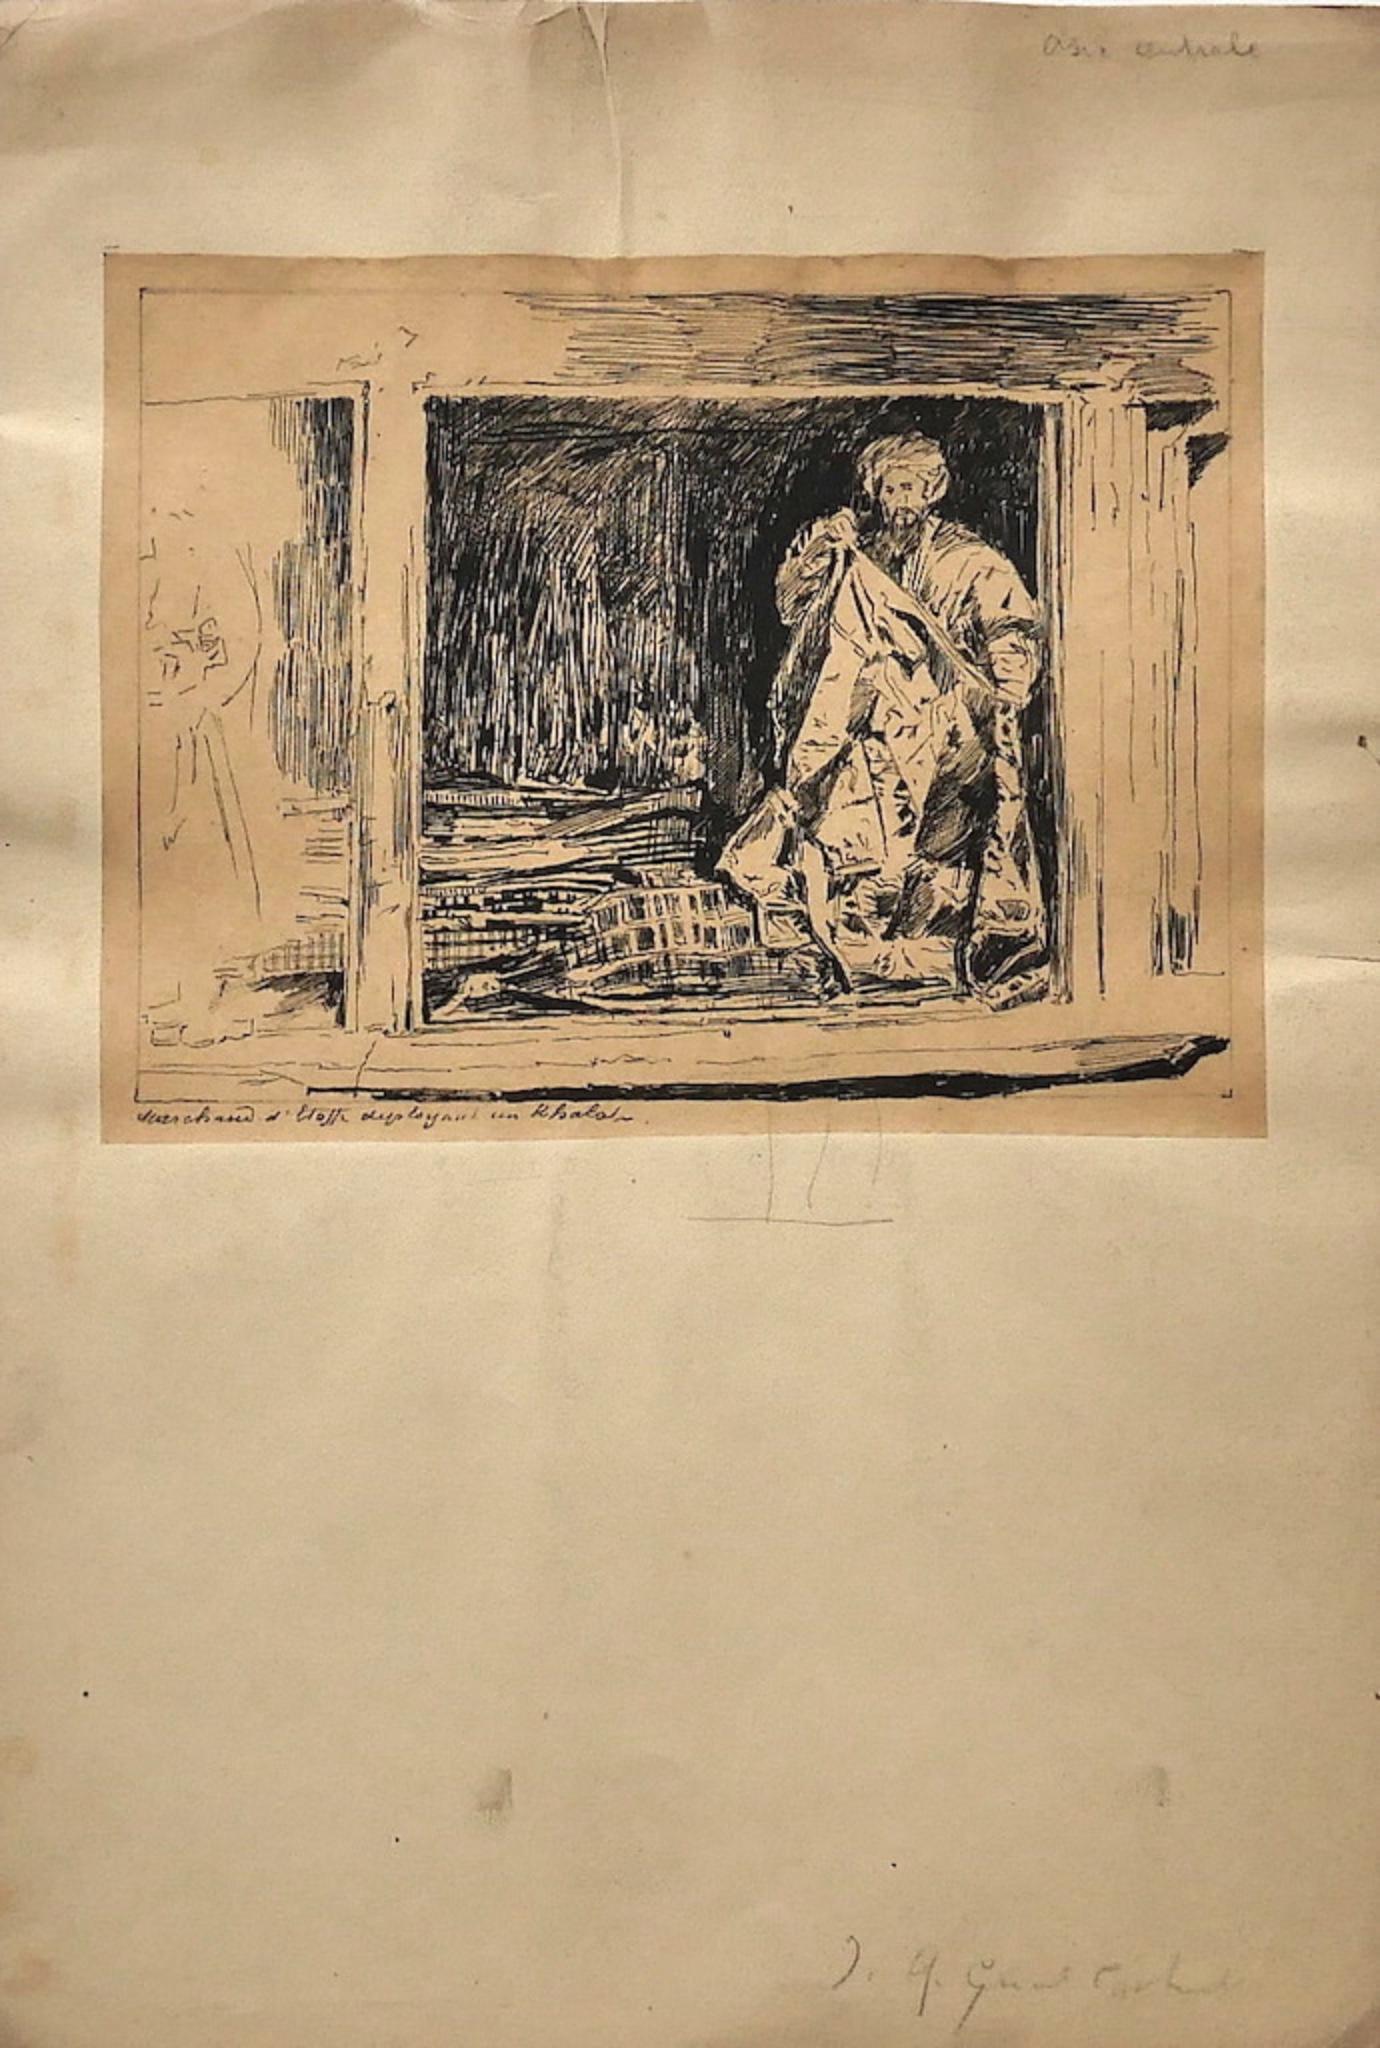 Artistics est un dessin original à la plume sur papier réalisé par l'artiste français Jean Albert Grand-Carteret (1903-1982)

Signé à la main en bas à droite au crayon.

Dimensions de l'image : 14 x 18 cm 

L'état de conservation est bon, avec